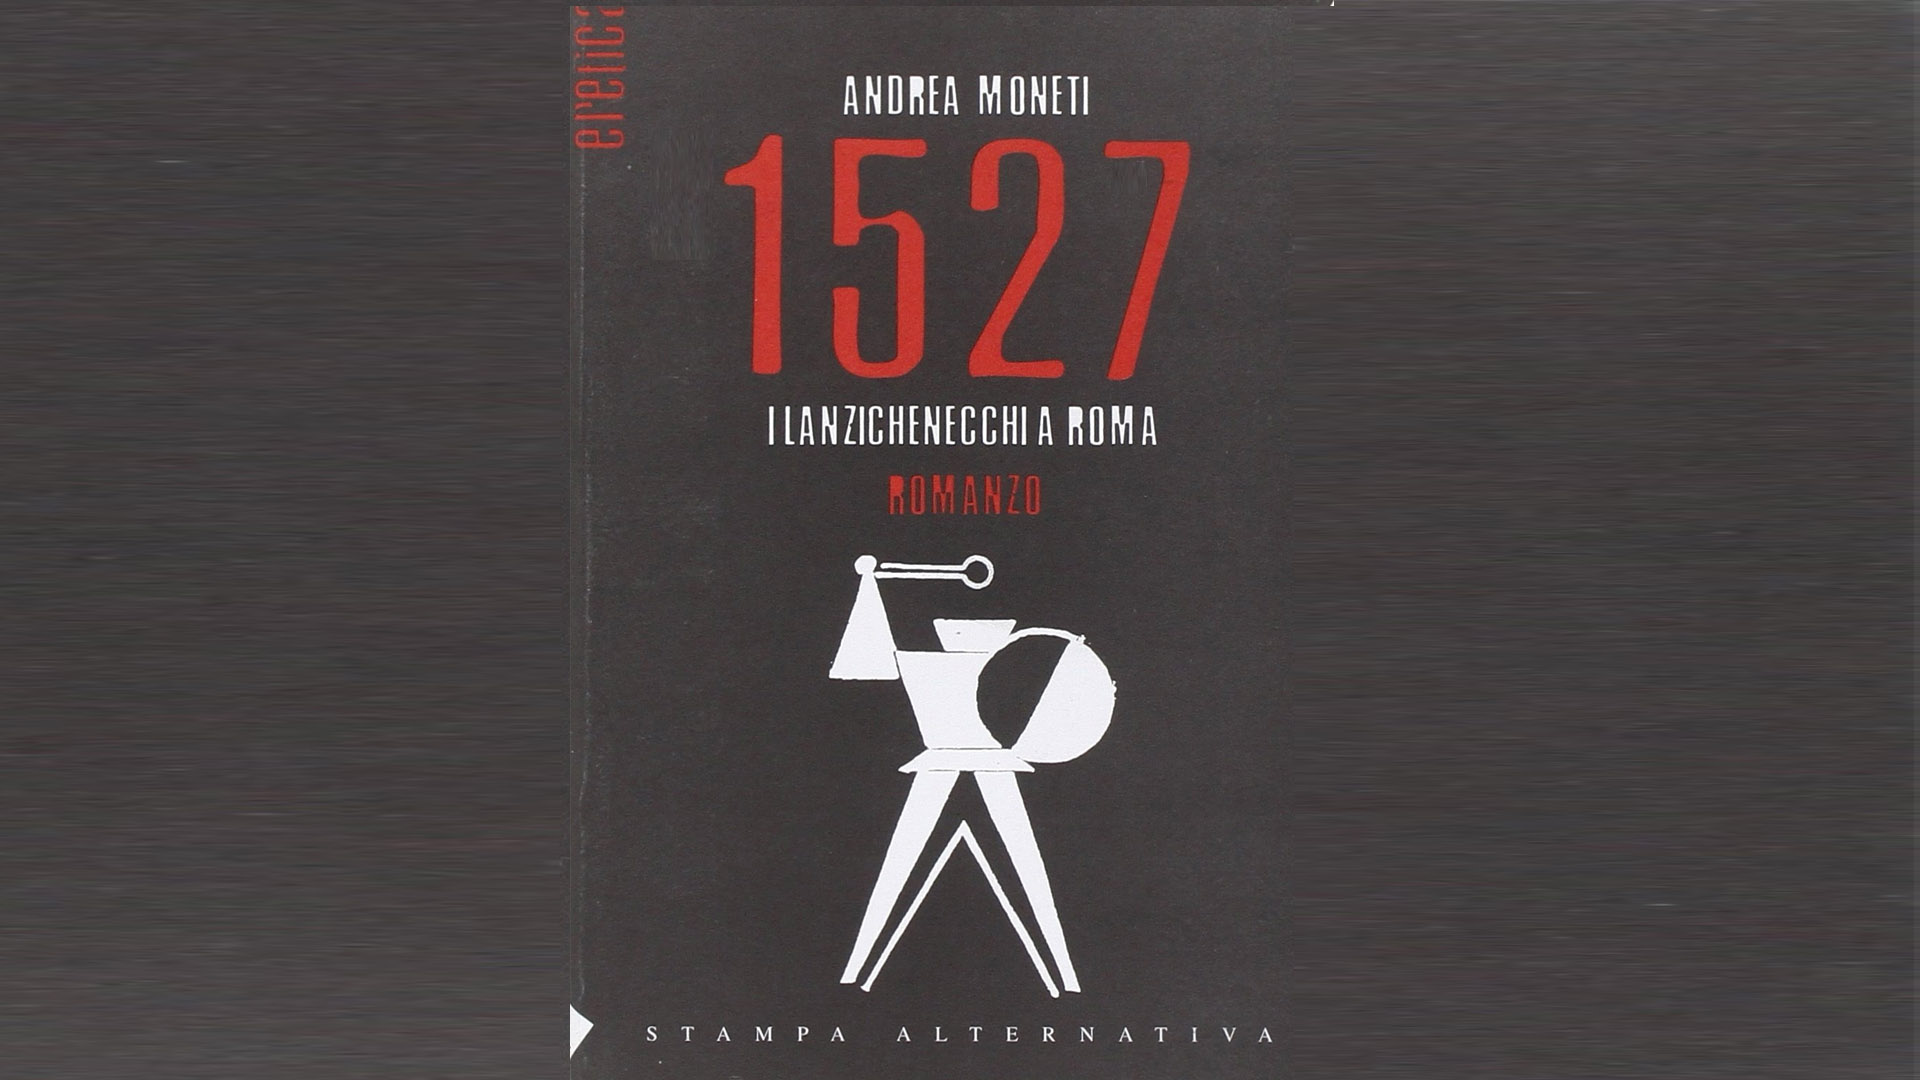 Nel video l'autore Andrea Moneti illustra il filo conduttore del suo romanzo " 1527 - I Lanzichenecchi a Roma": il dialogo.